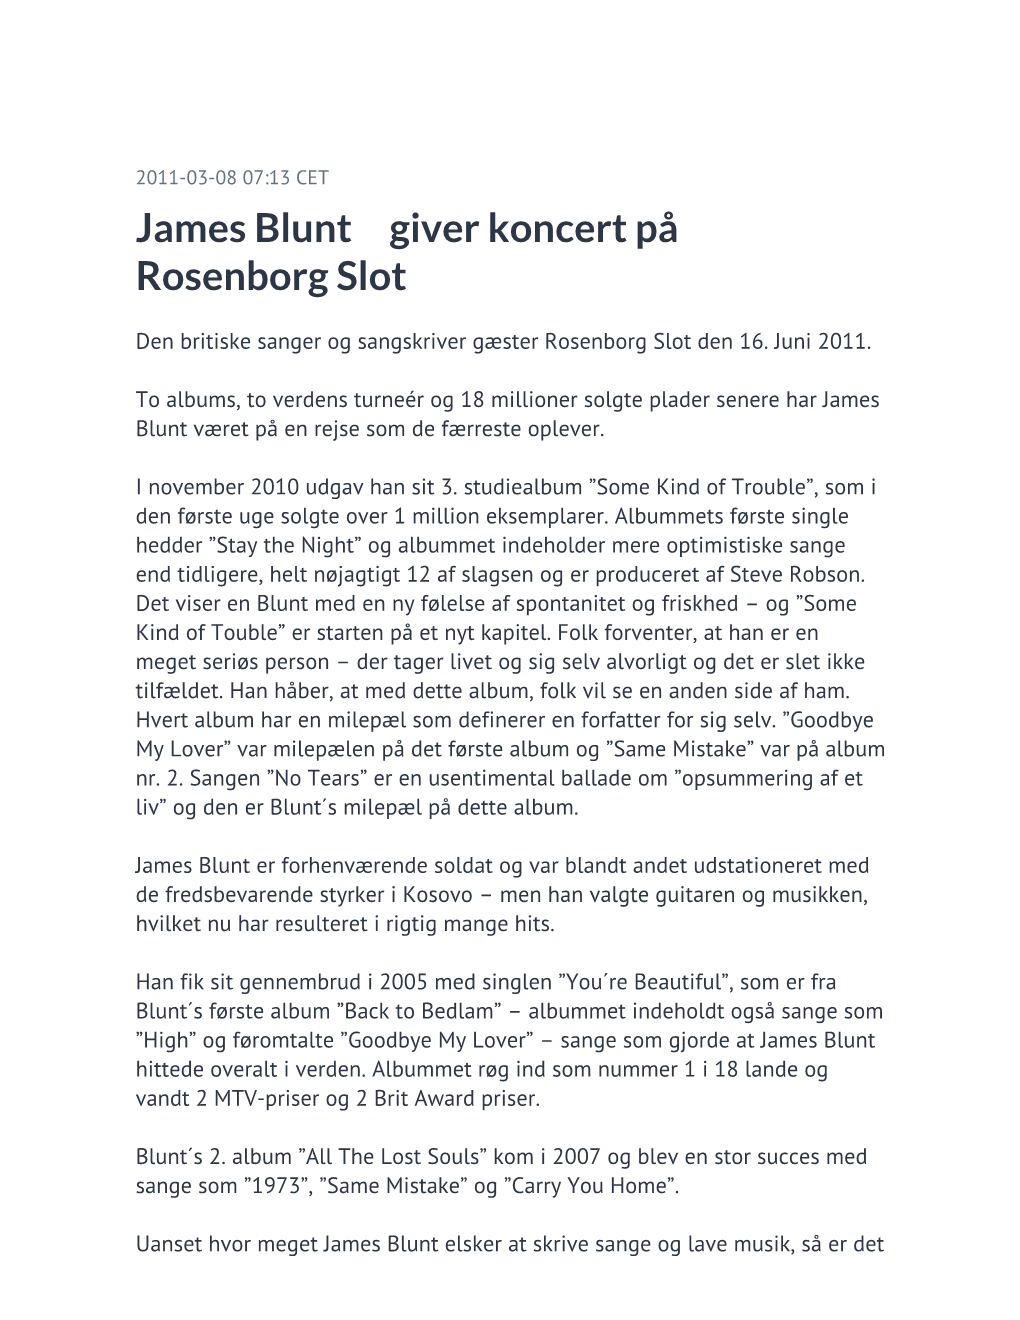 James Blunt Giver Koncert På Rosenborg Slot